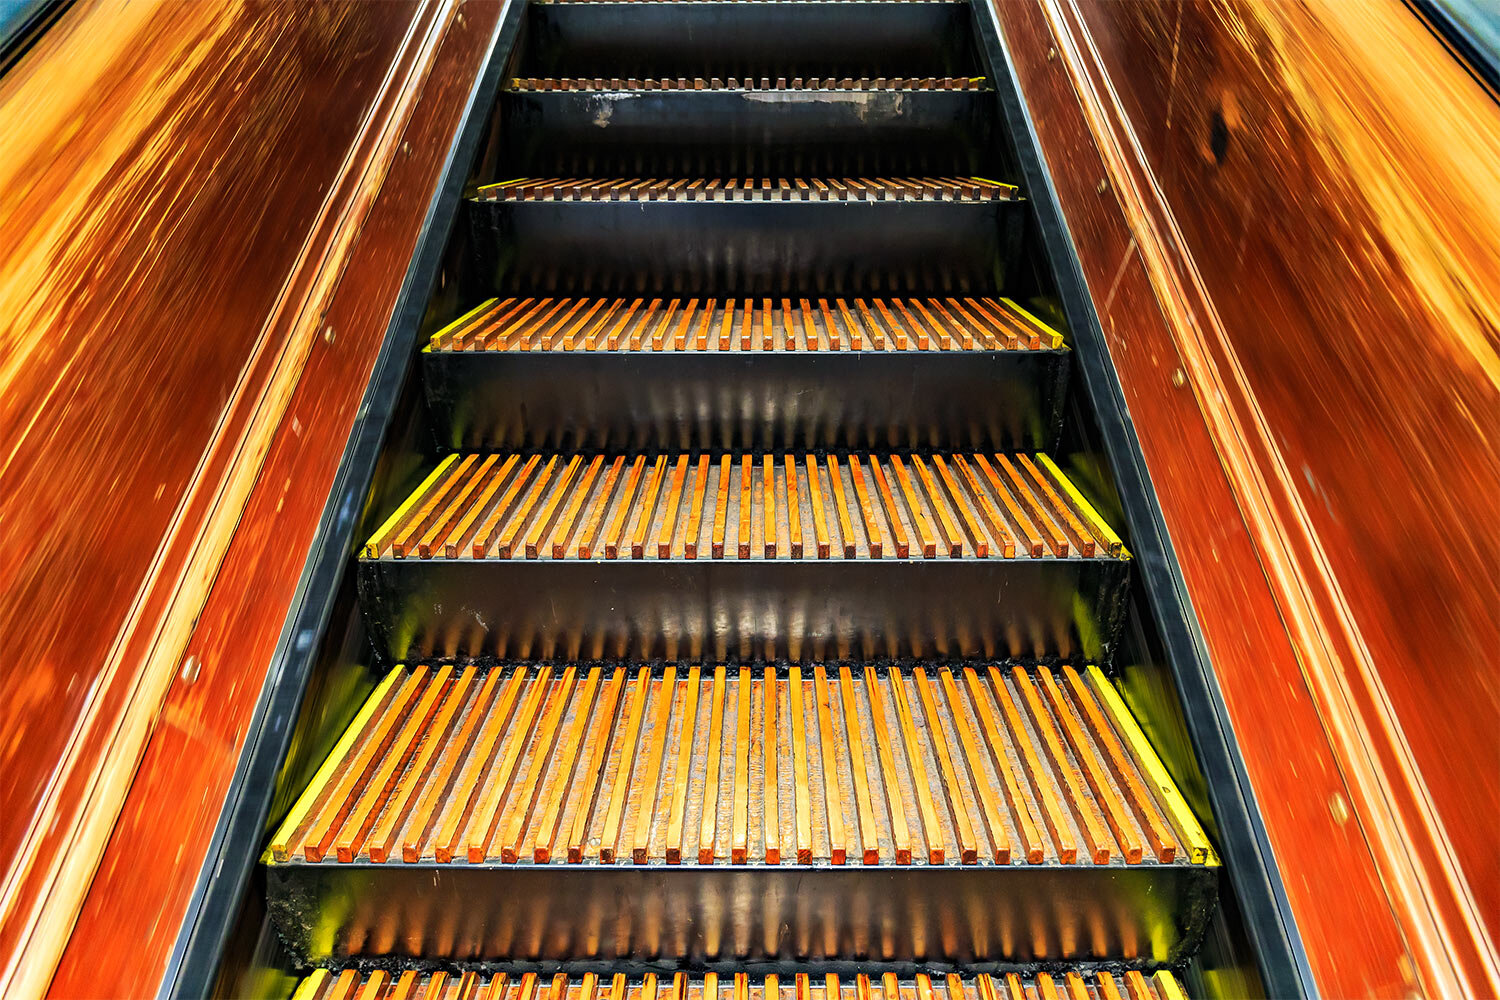 Macy's Wooden Escalators